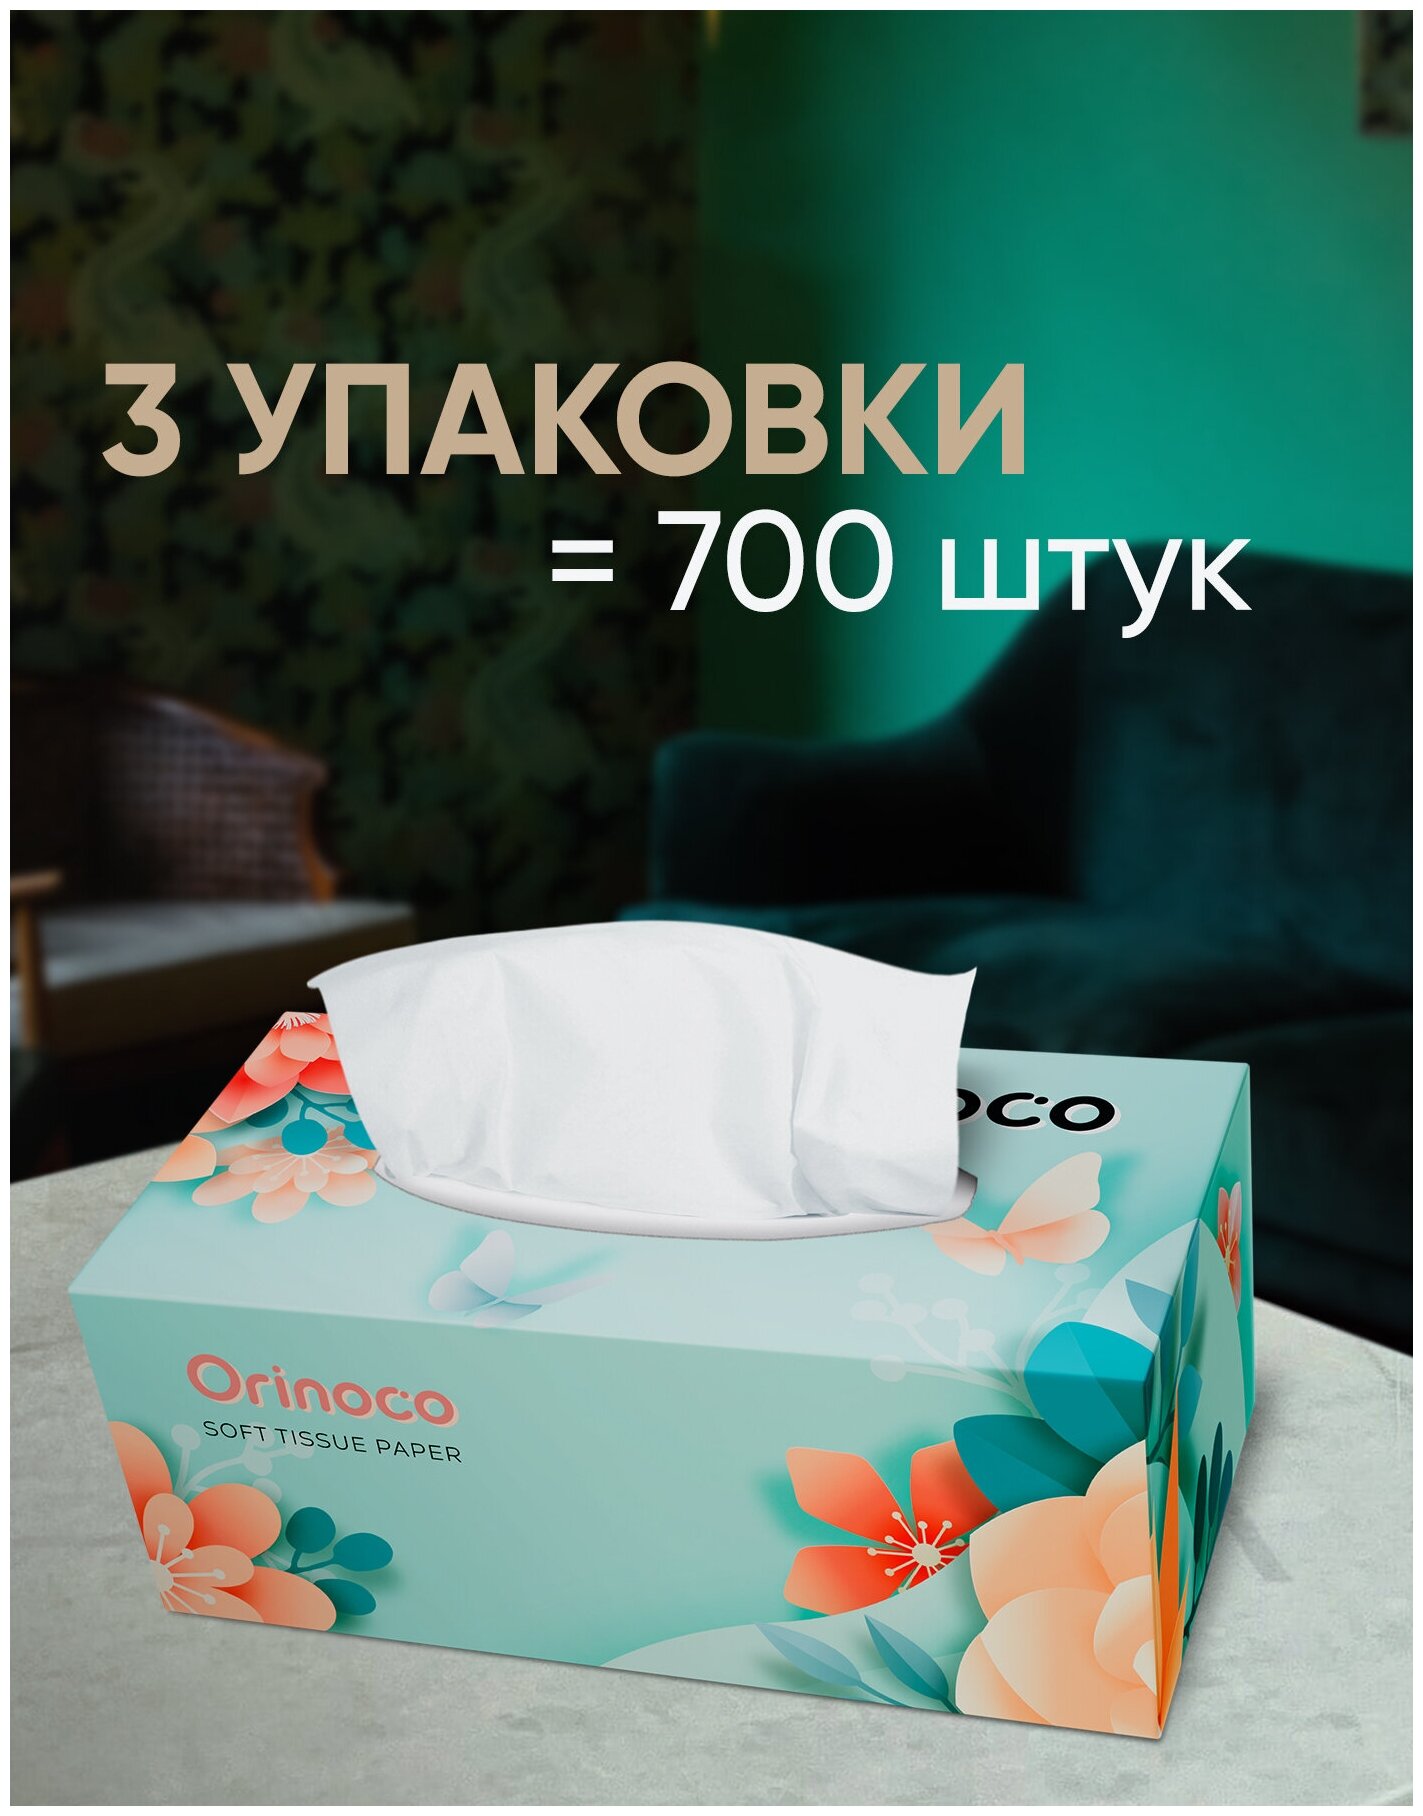 Салфетки бумажные премиум Orinoco 700 шт двухслойные 3 уп. в коробке для офиса в машину и снятие макияжа - фотография № 1